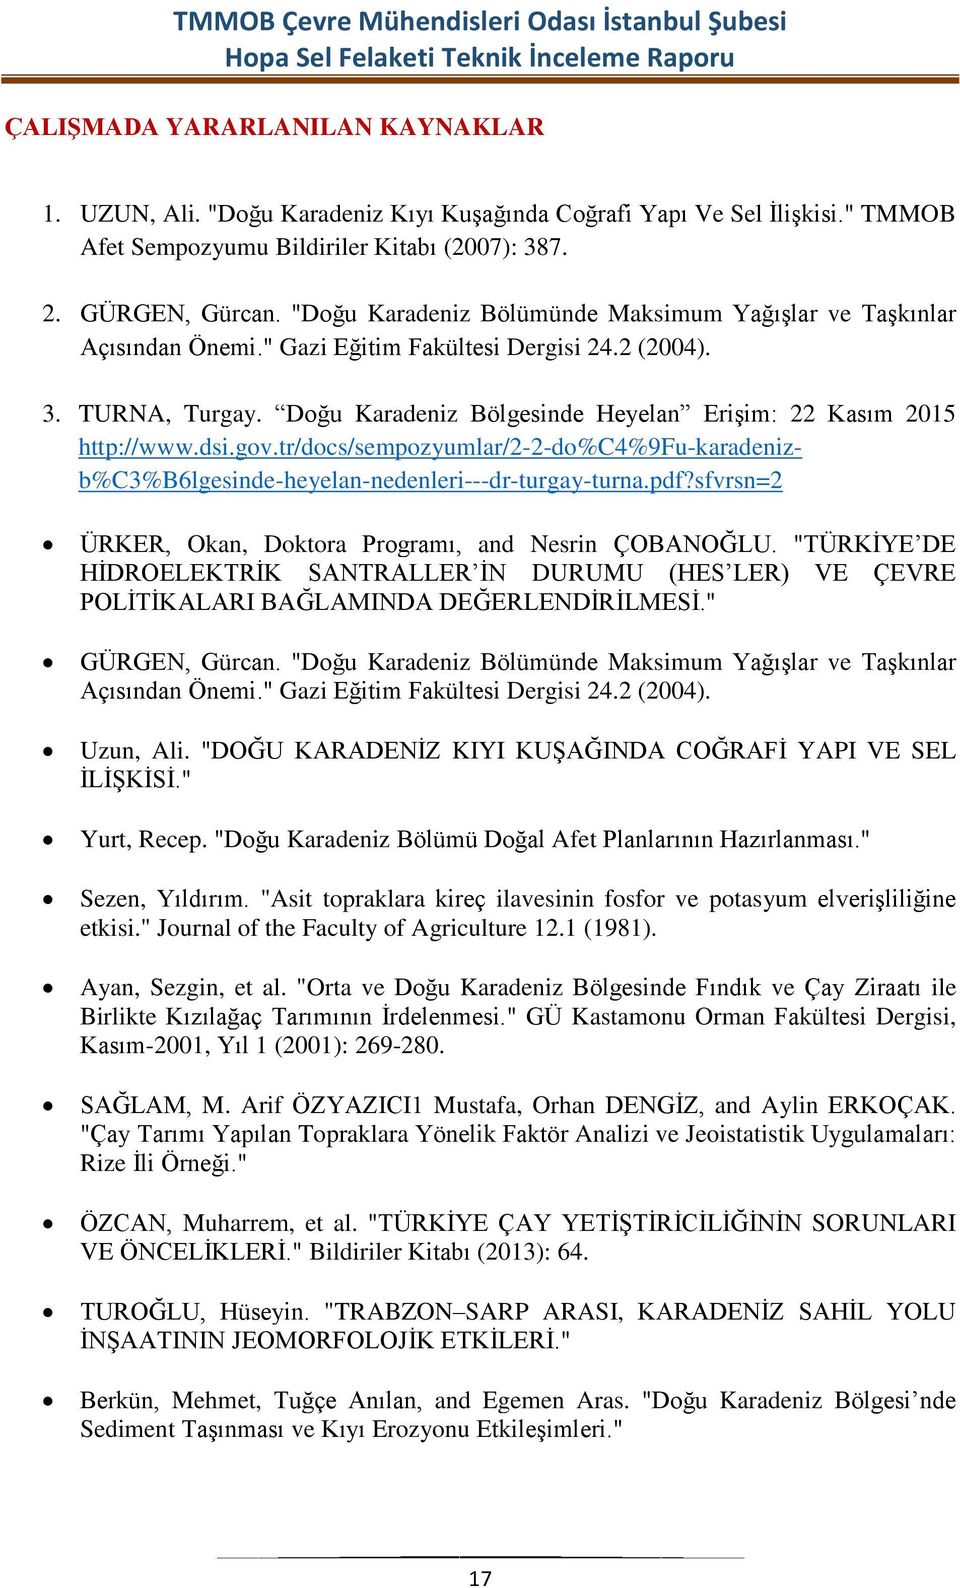 Doğu Karadeniz Bölgesinde Heyelan EriĢim: 22 Kasım 2015 http://www.dsi.gov.tr/docs/sempozyumlar/2-2-do%c4%9fu-karadenizb%c3%b6lgesinde-heyelan-nedenleri---dr-turgay-turna.pdf?